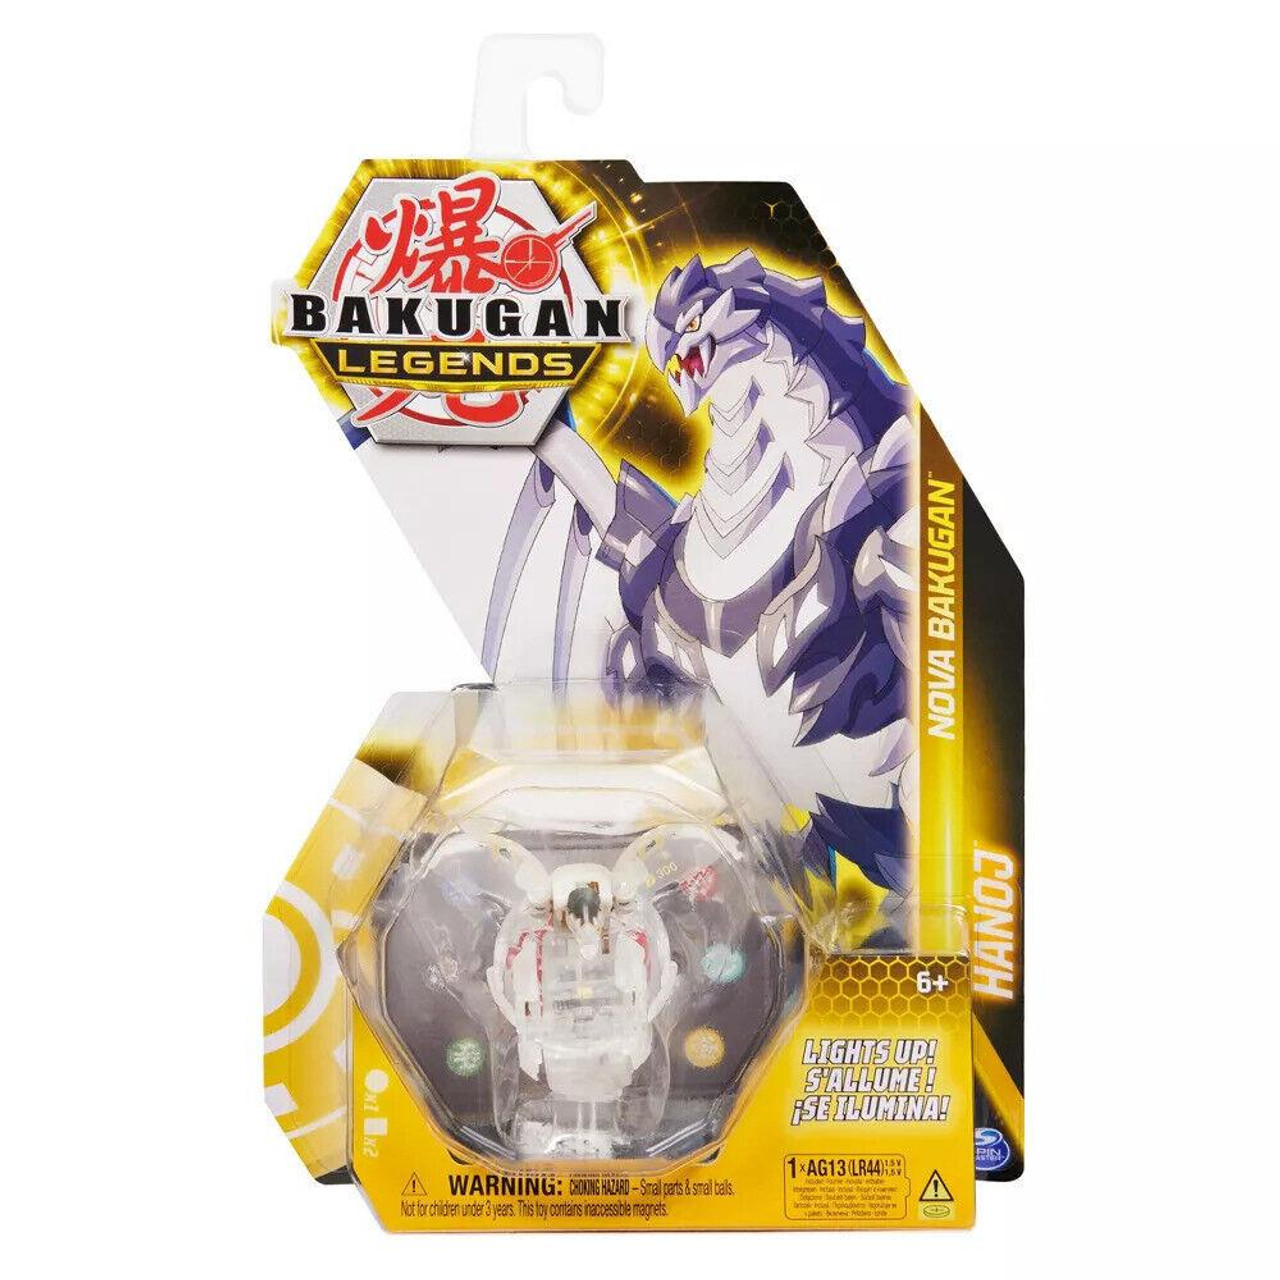 Bakugan Legends Aurelos Nova Pegatrix Gold Light Up Figure - Brand New